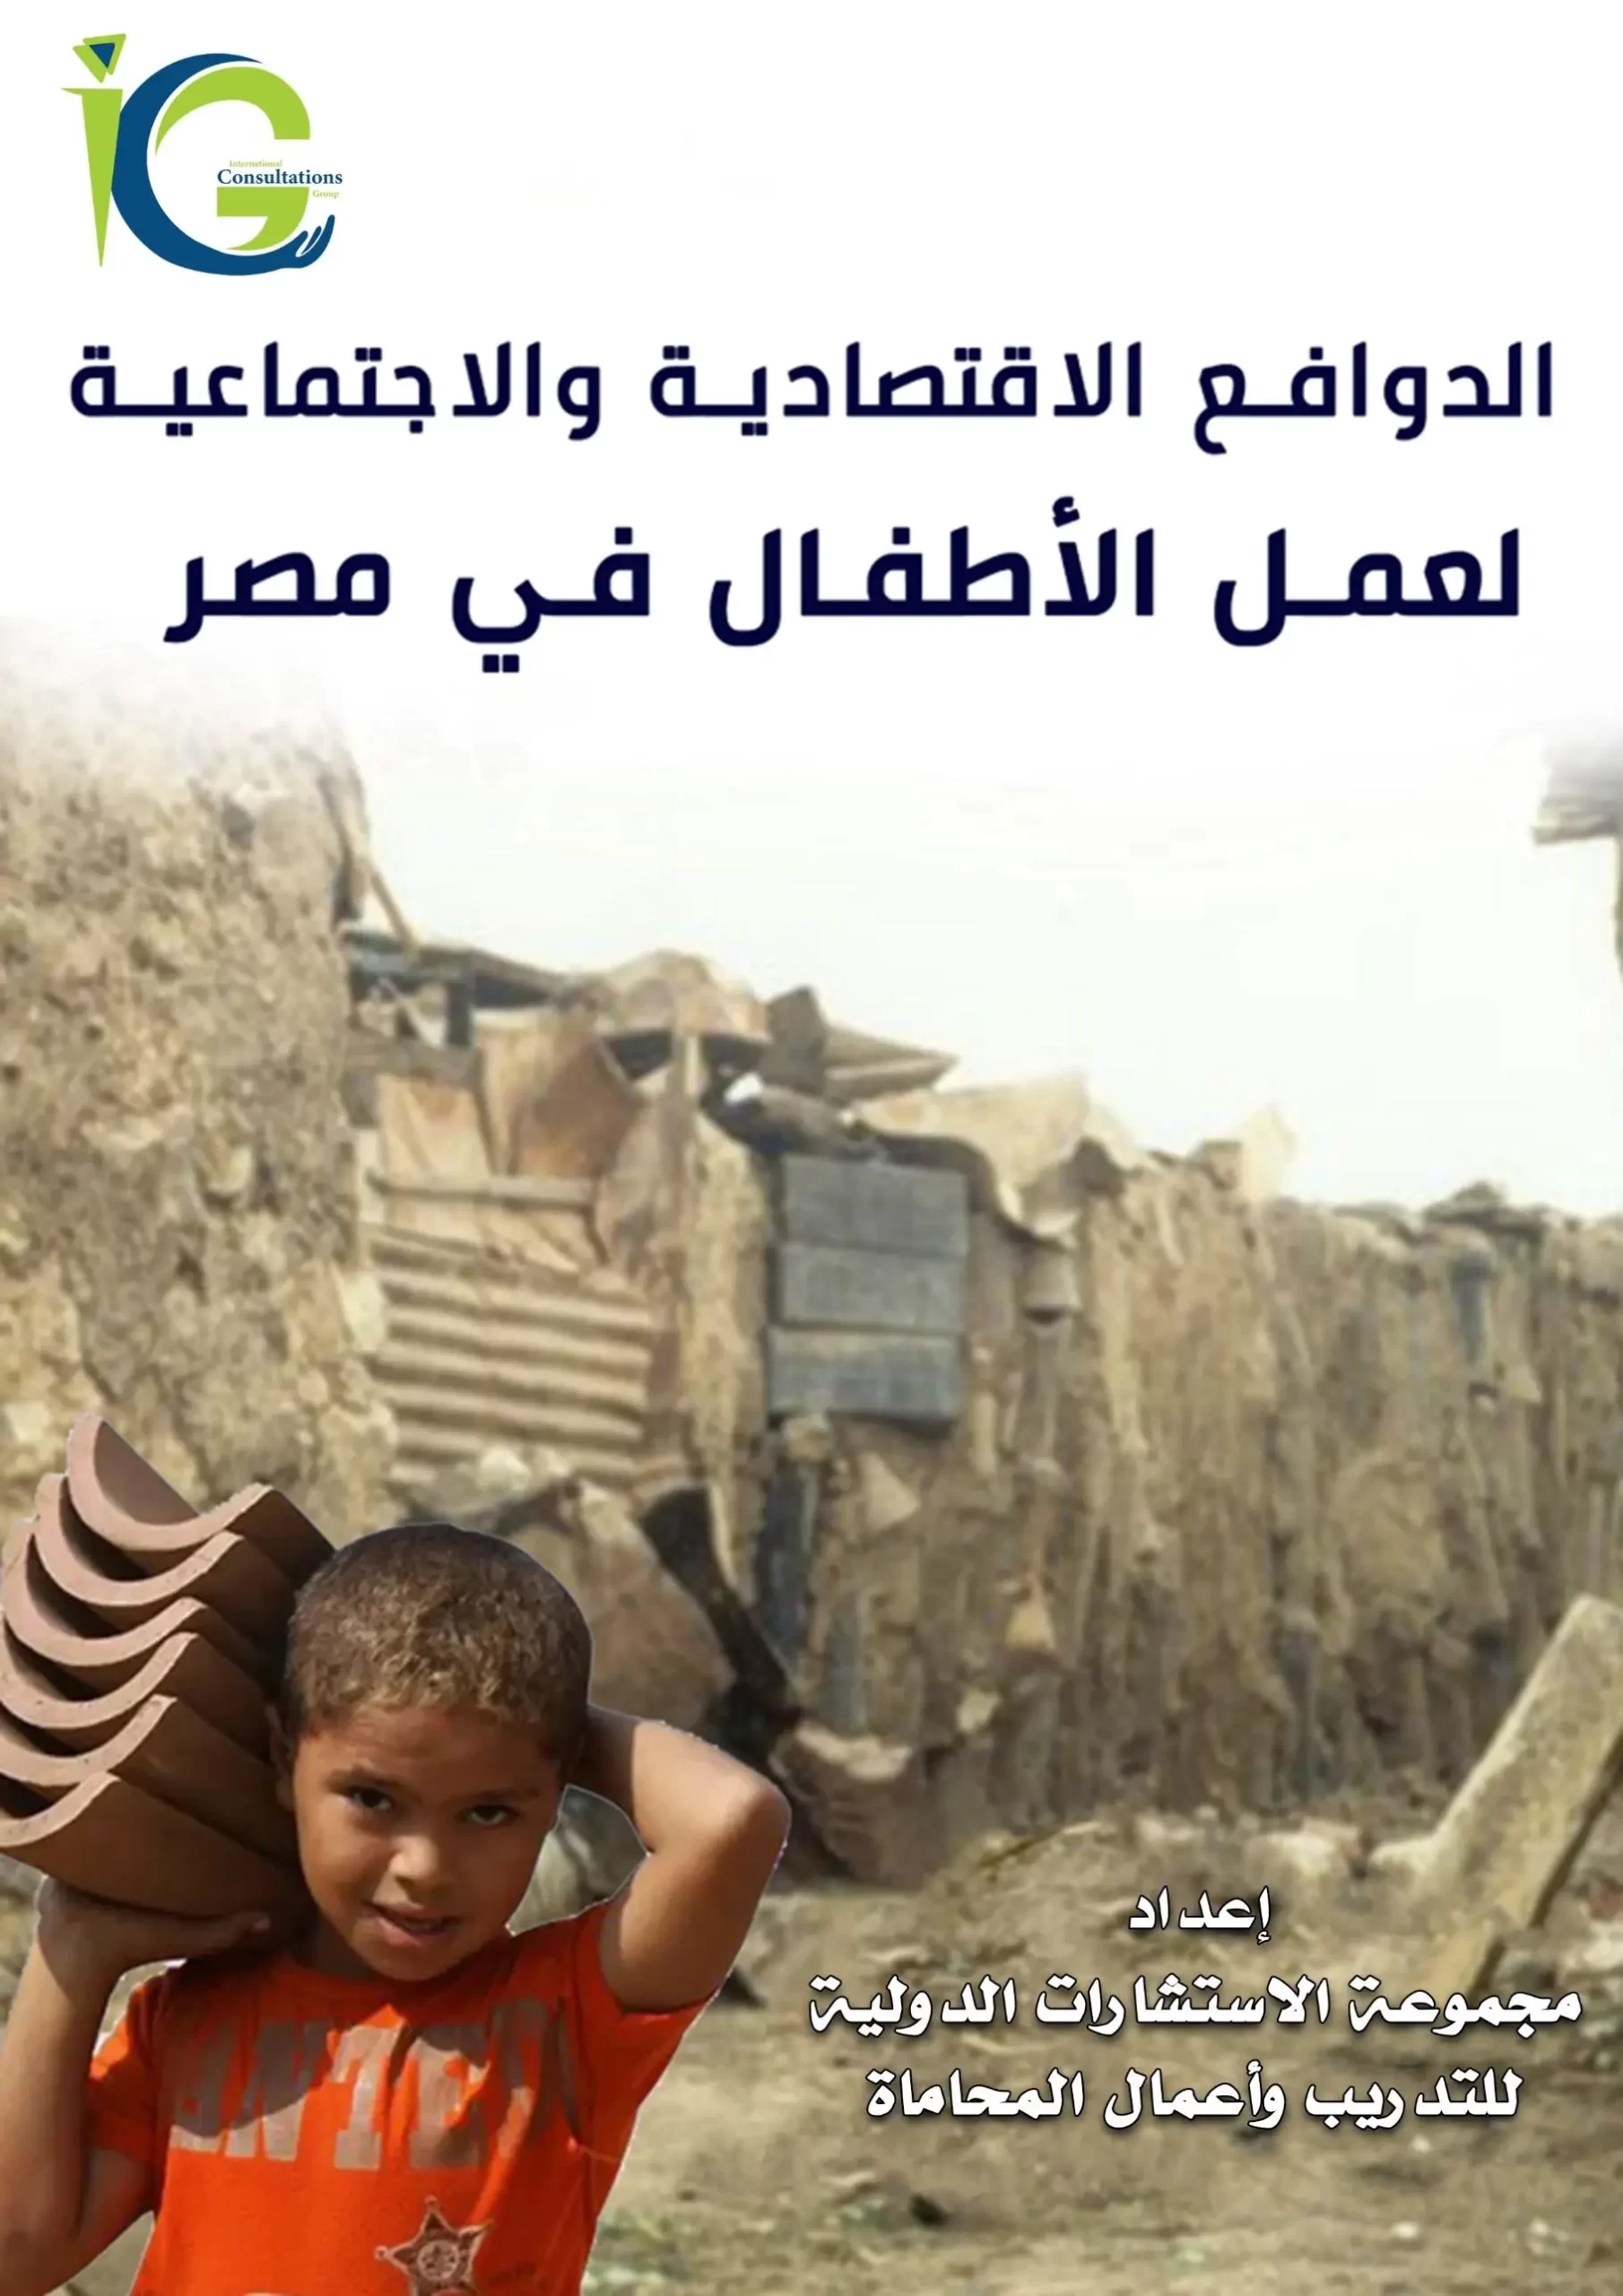 الدوافع الاقتصادية والاجتماعية لعمل الأطفال في مصر